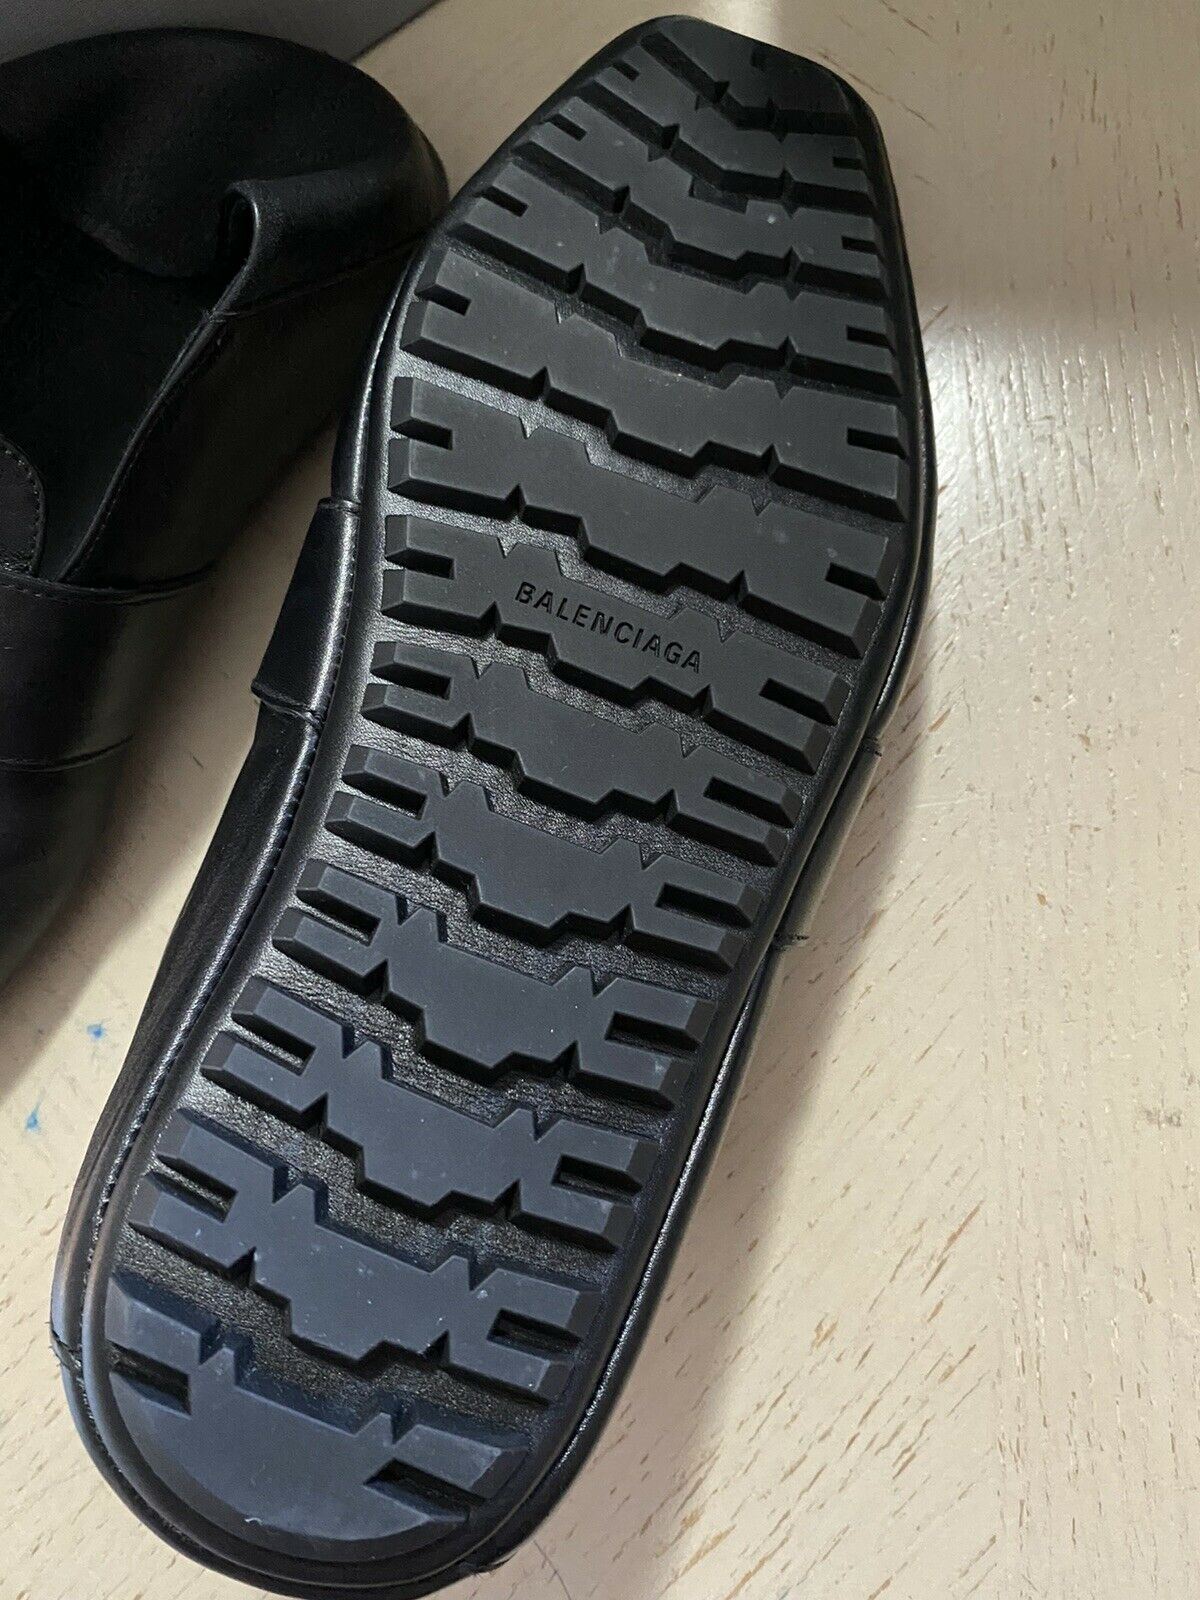 Neu $750 Balenciaga Iconic Mokassin Leder Loafers Schuhe Sandale Schwarz 7 US/40 E